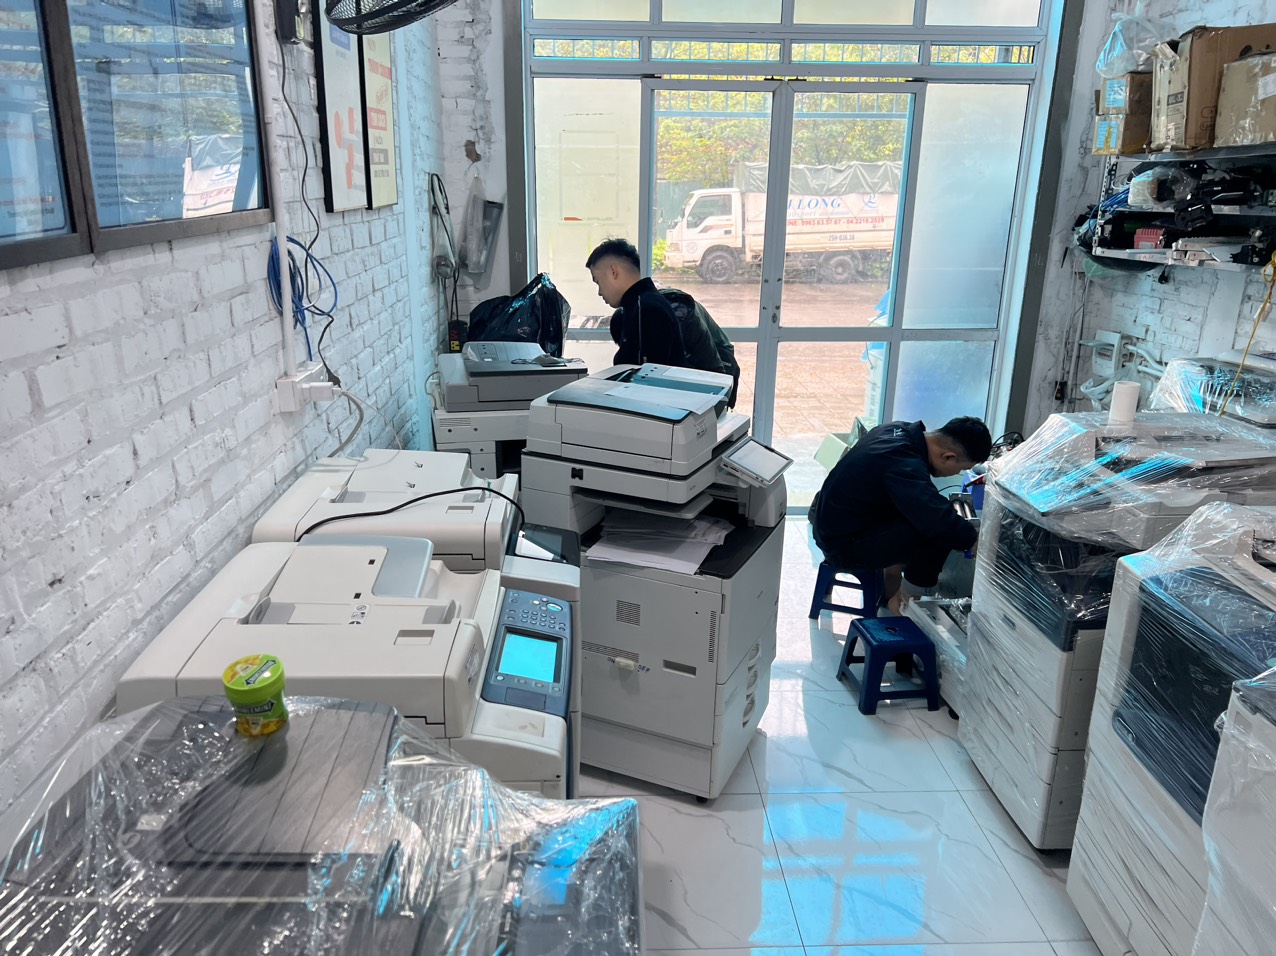 Cho thuê, bán máy photocopy tại Ba Vì, Quốc Oai, Việt Trì Phú Thọ